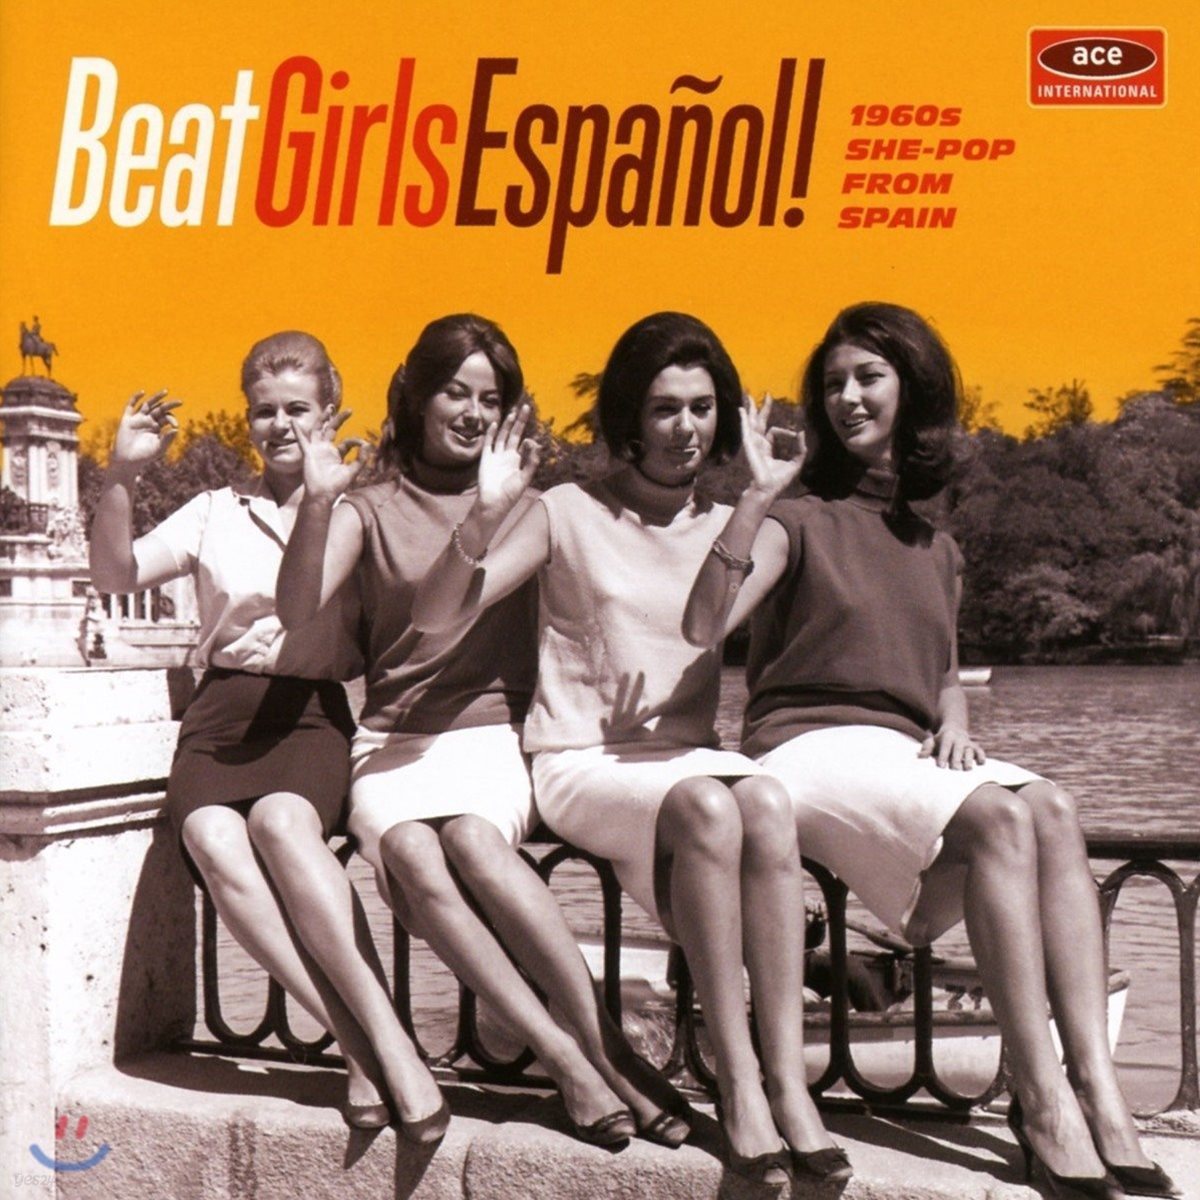 1960년대 스페인 여성 보컬 모음집 (Beat Girls Espanol! 1960s She-Pop From Spain)